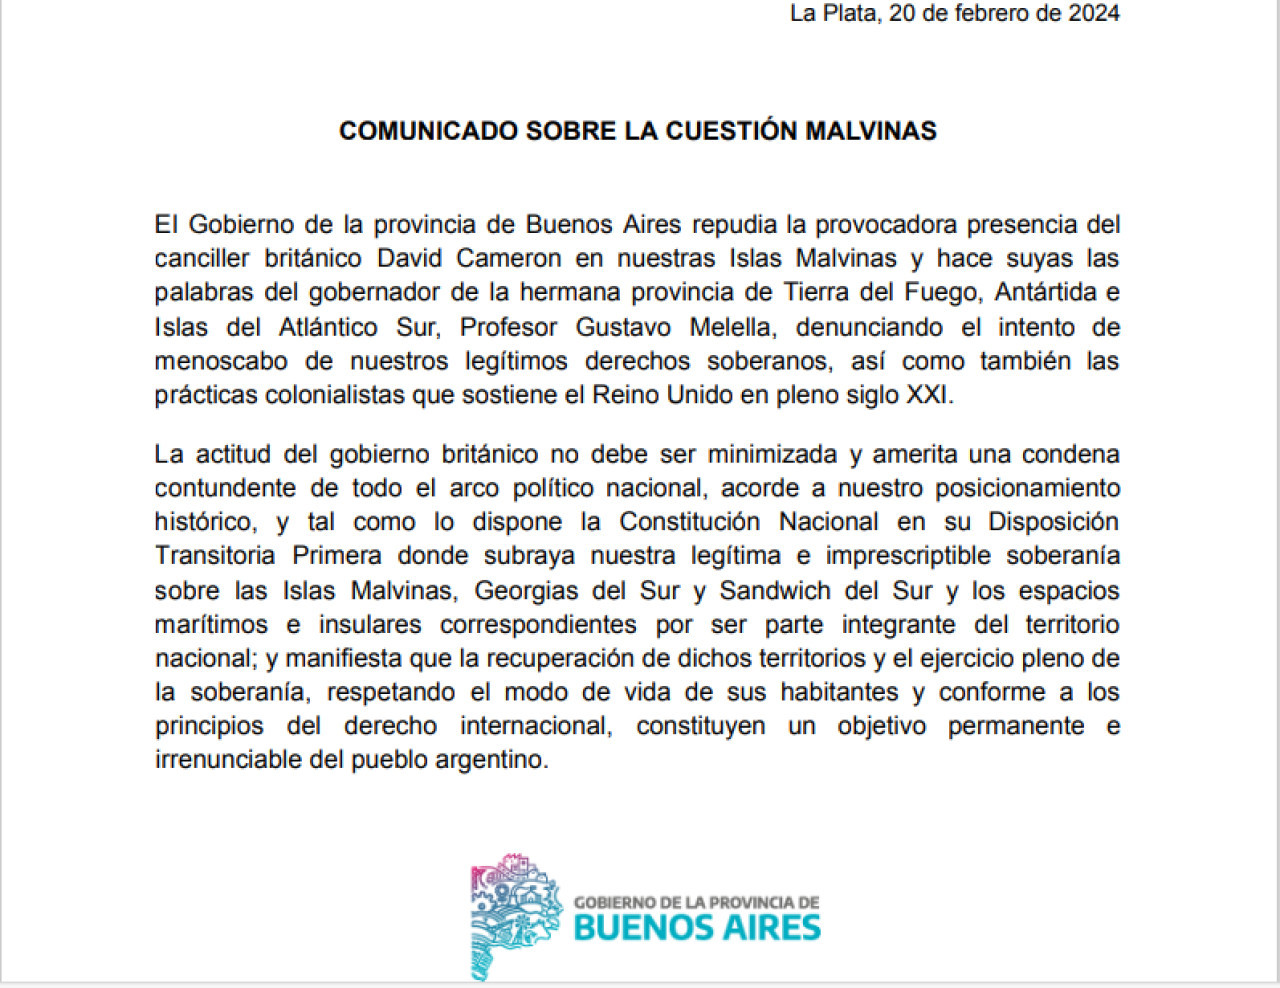 El comunicado de la Provincia de Buenos Aires en repudio a la vista de Cameron a las Islas Malvinas.